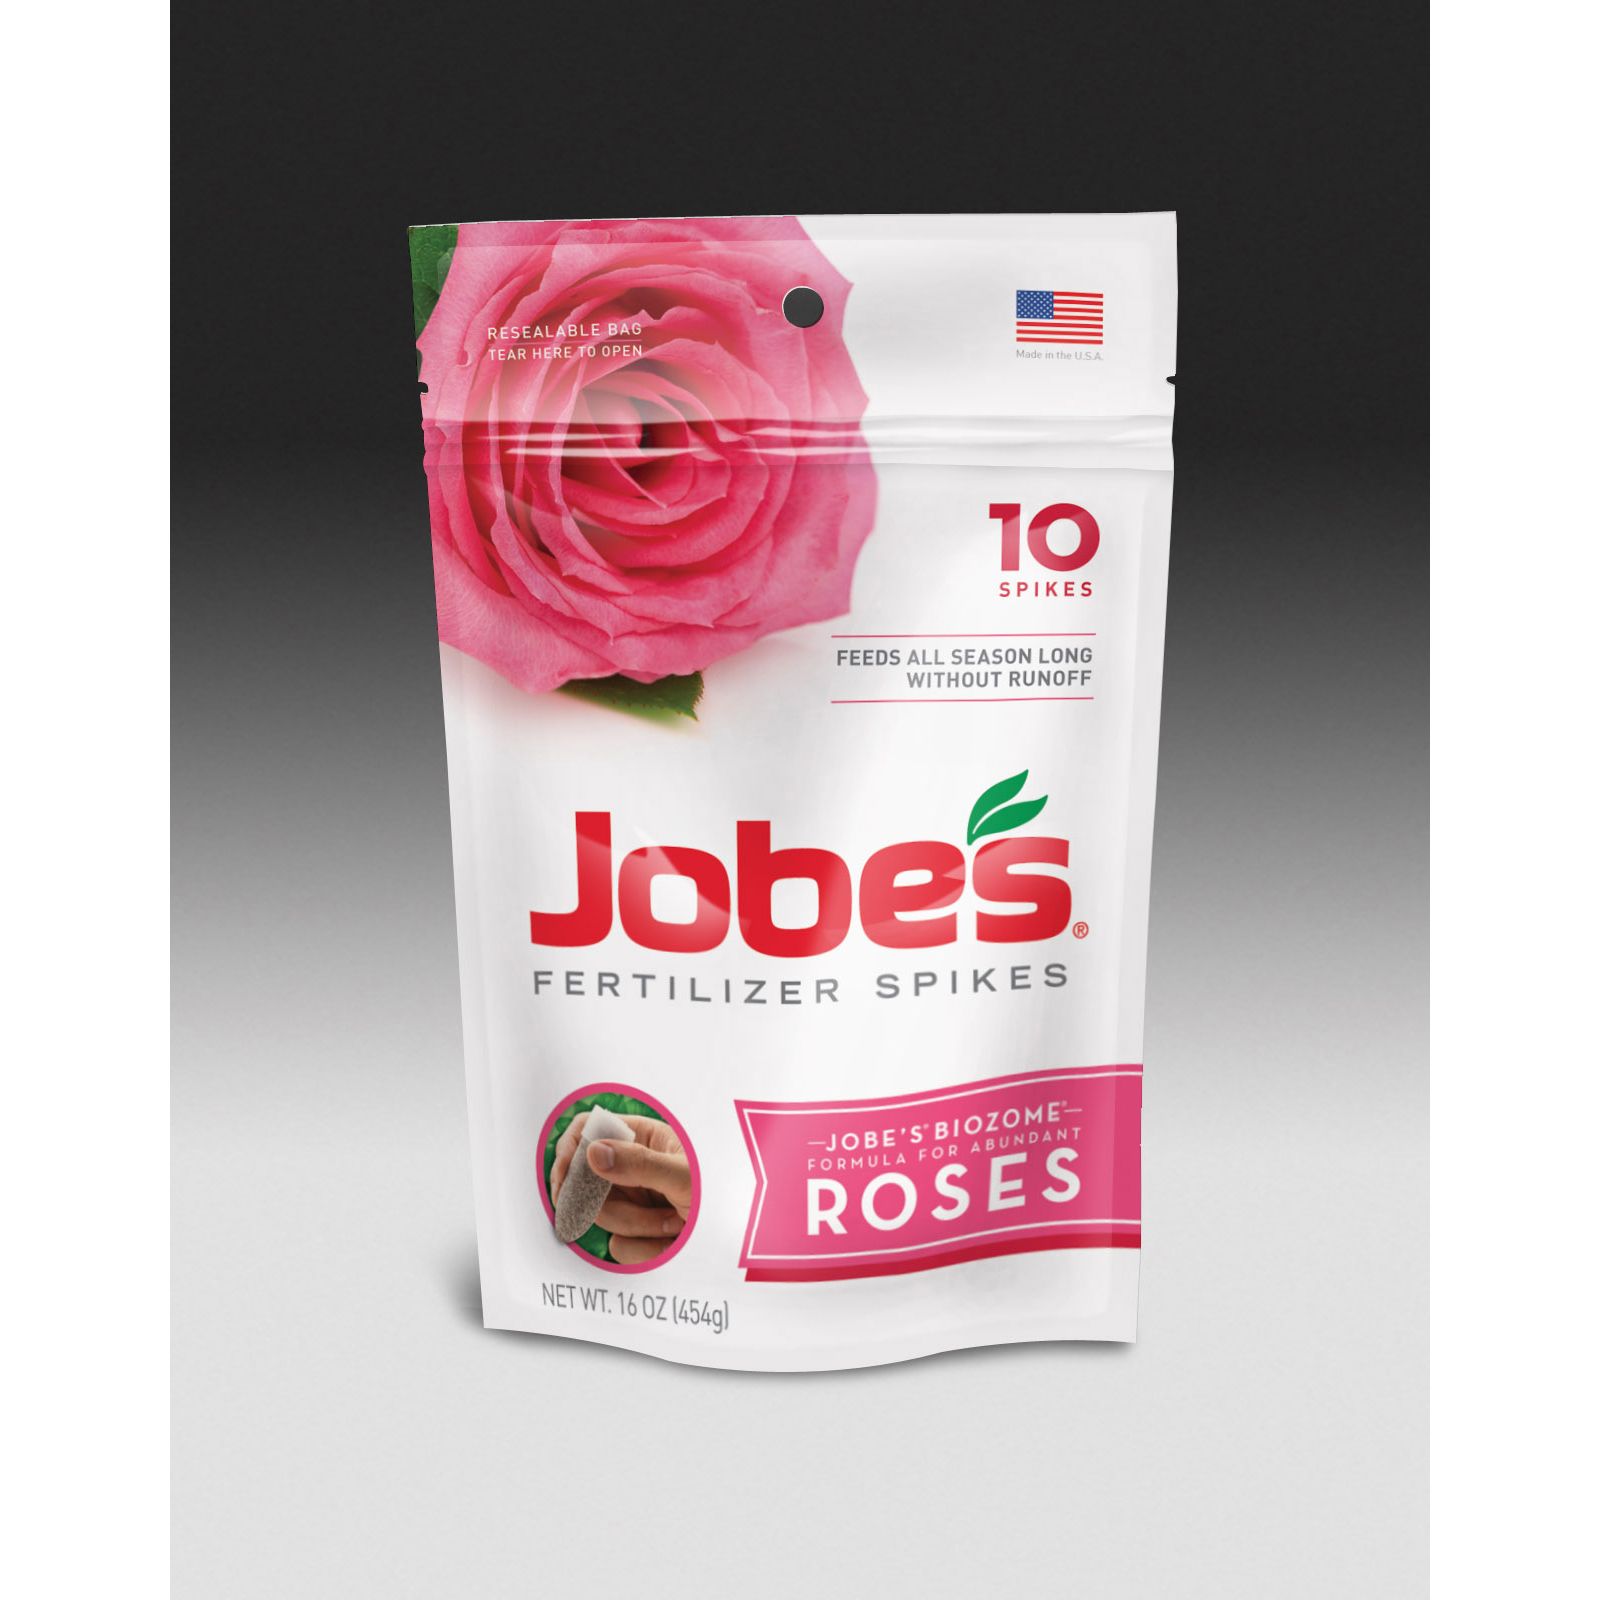 04102 Jobe's Fertilizer Spikes for Roses